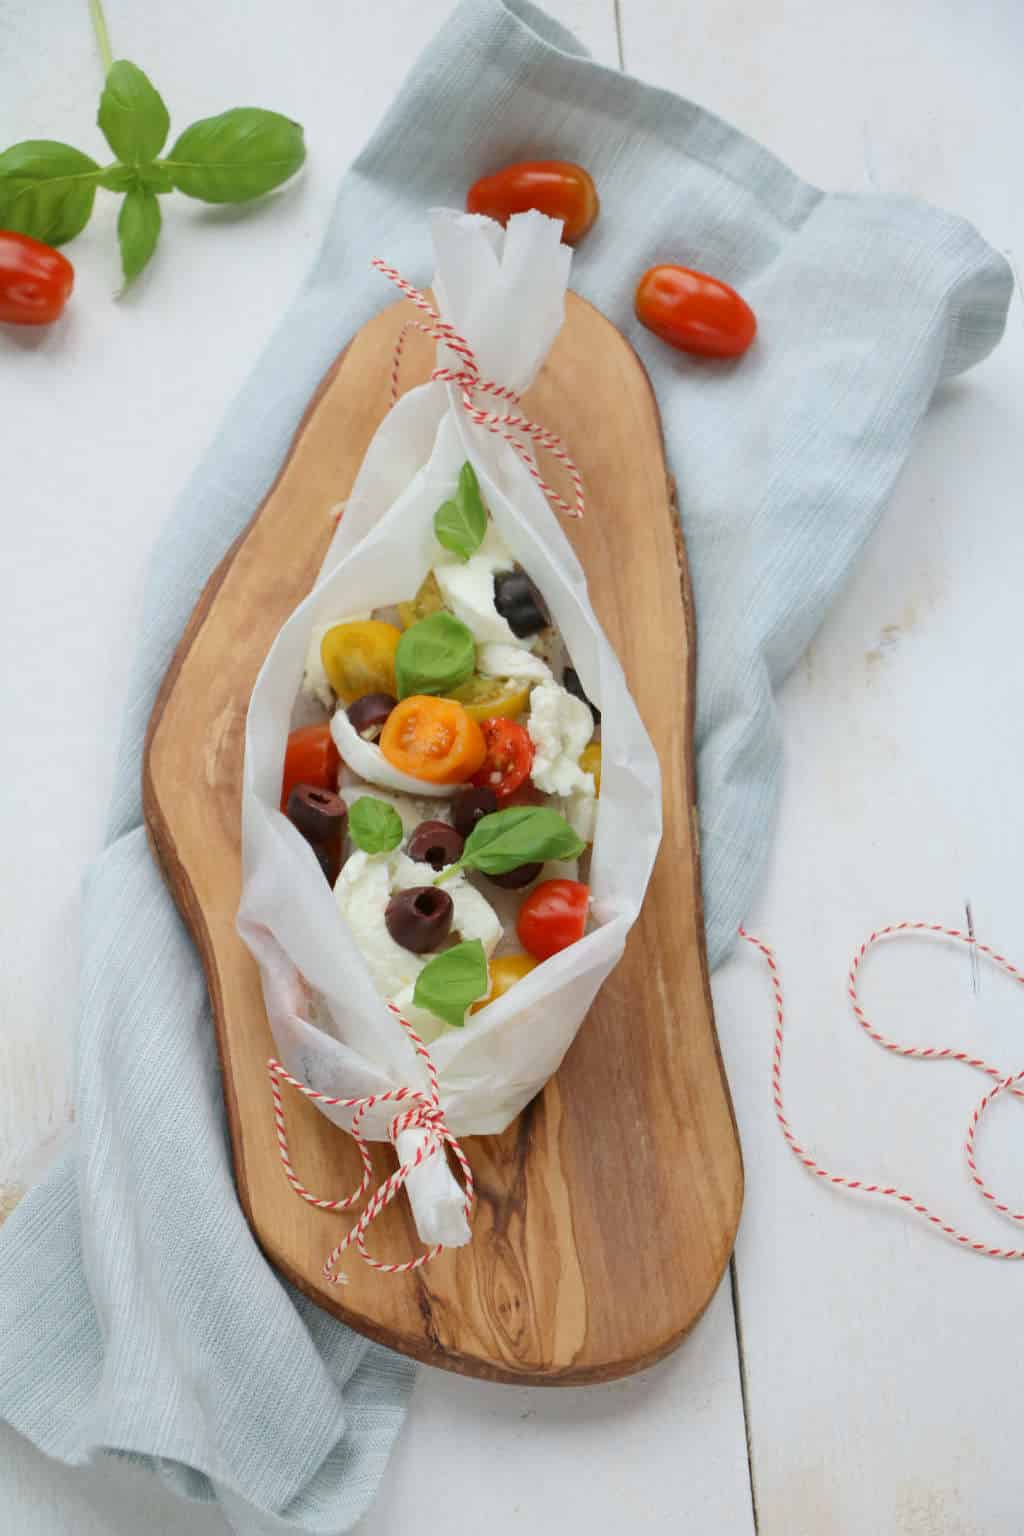 Met de kabeljauw uit de oven Jamie Oliver style maak je heerlijke vispakketjes met tomaat, mozzarella en olijven die je kunt aanpassen per persoon.